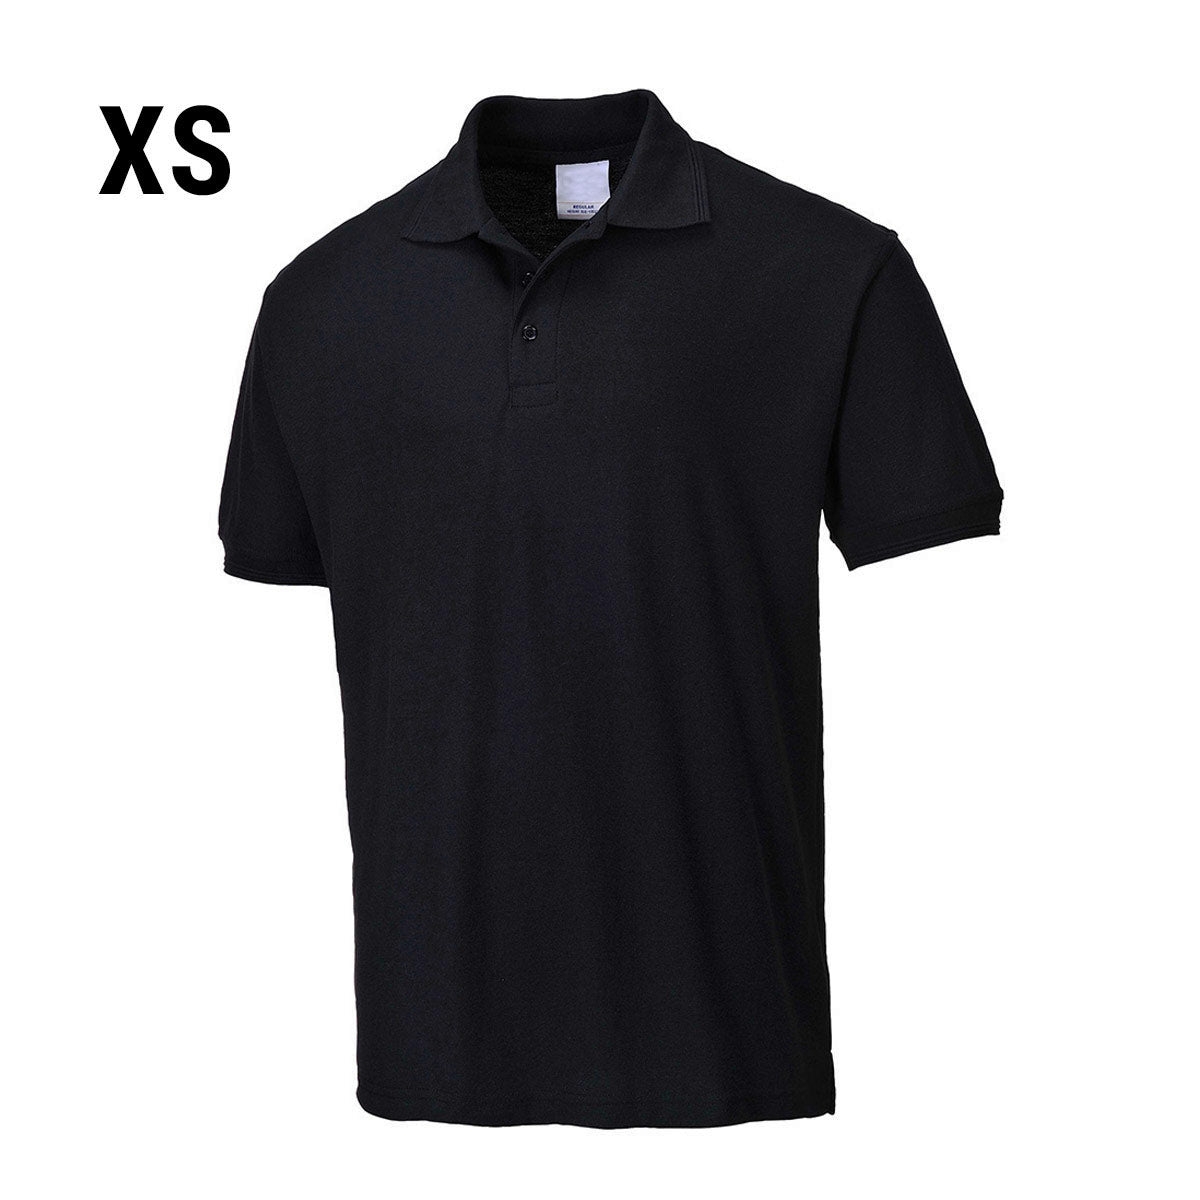 Poloskjorte for menn - Svart - Størrelse: XS